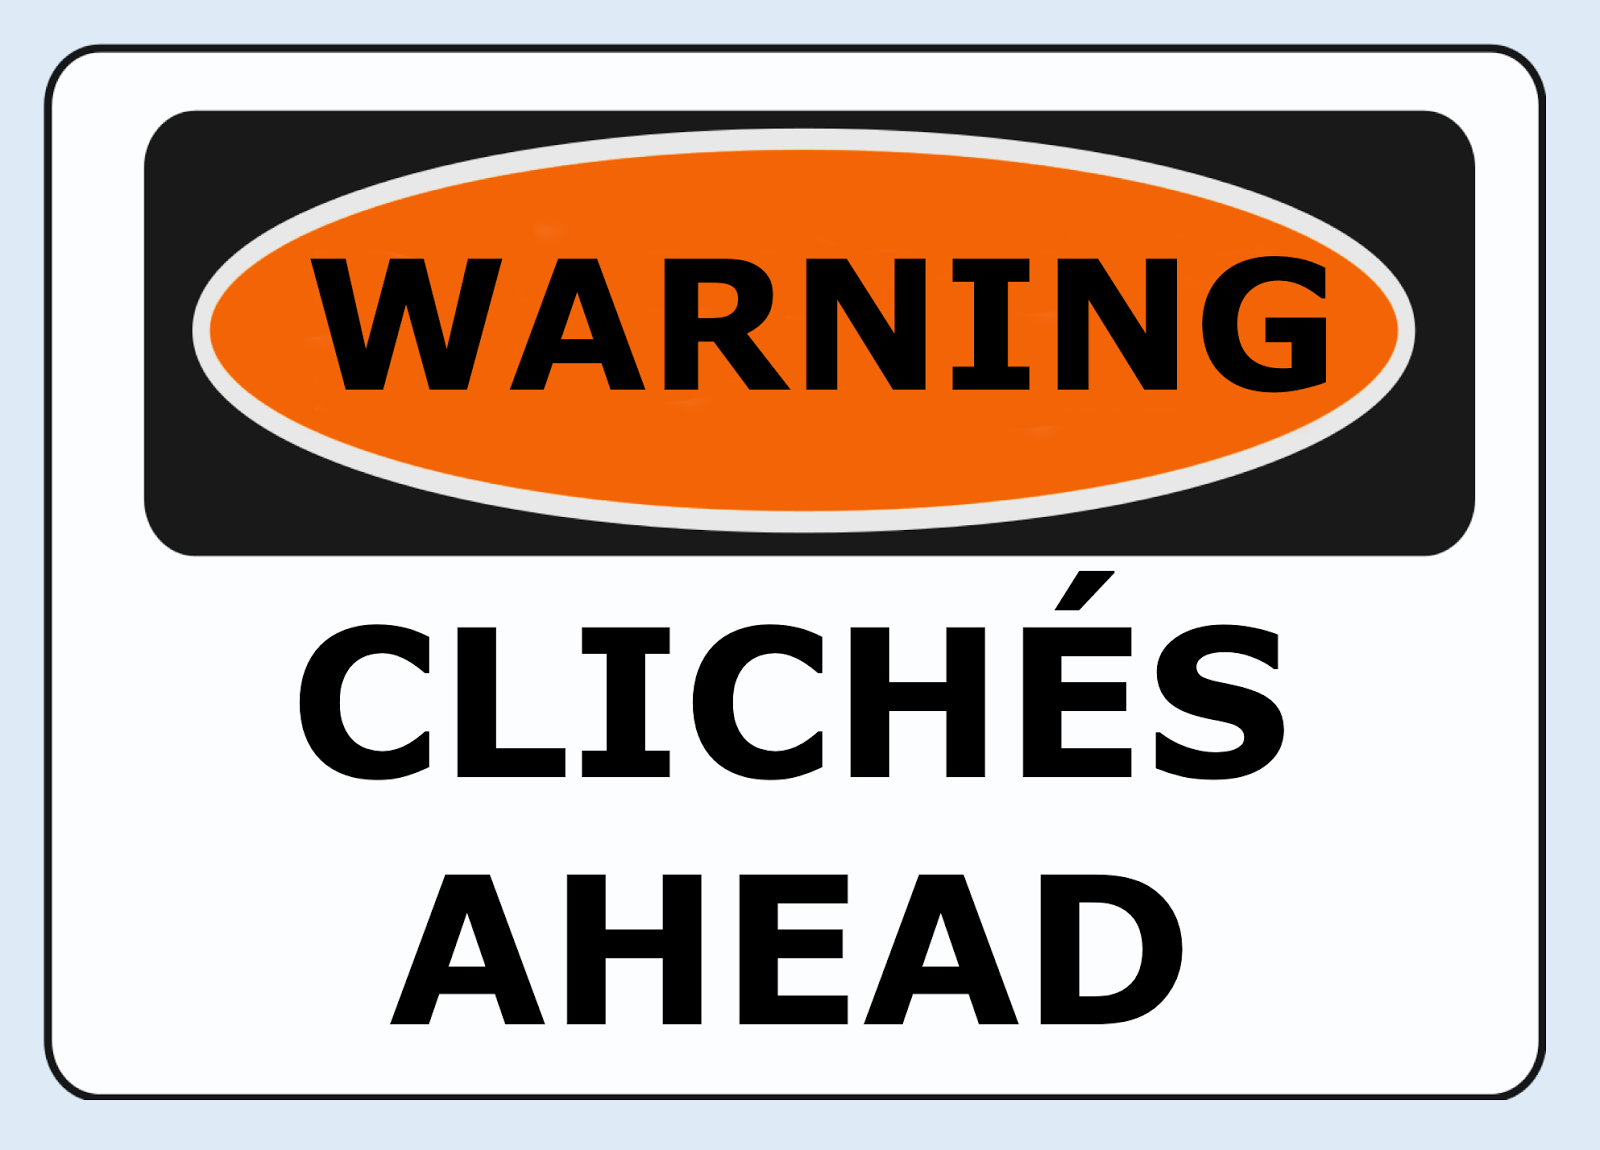 Avoid ClichéS!